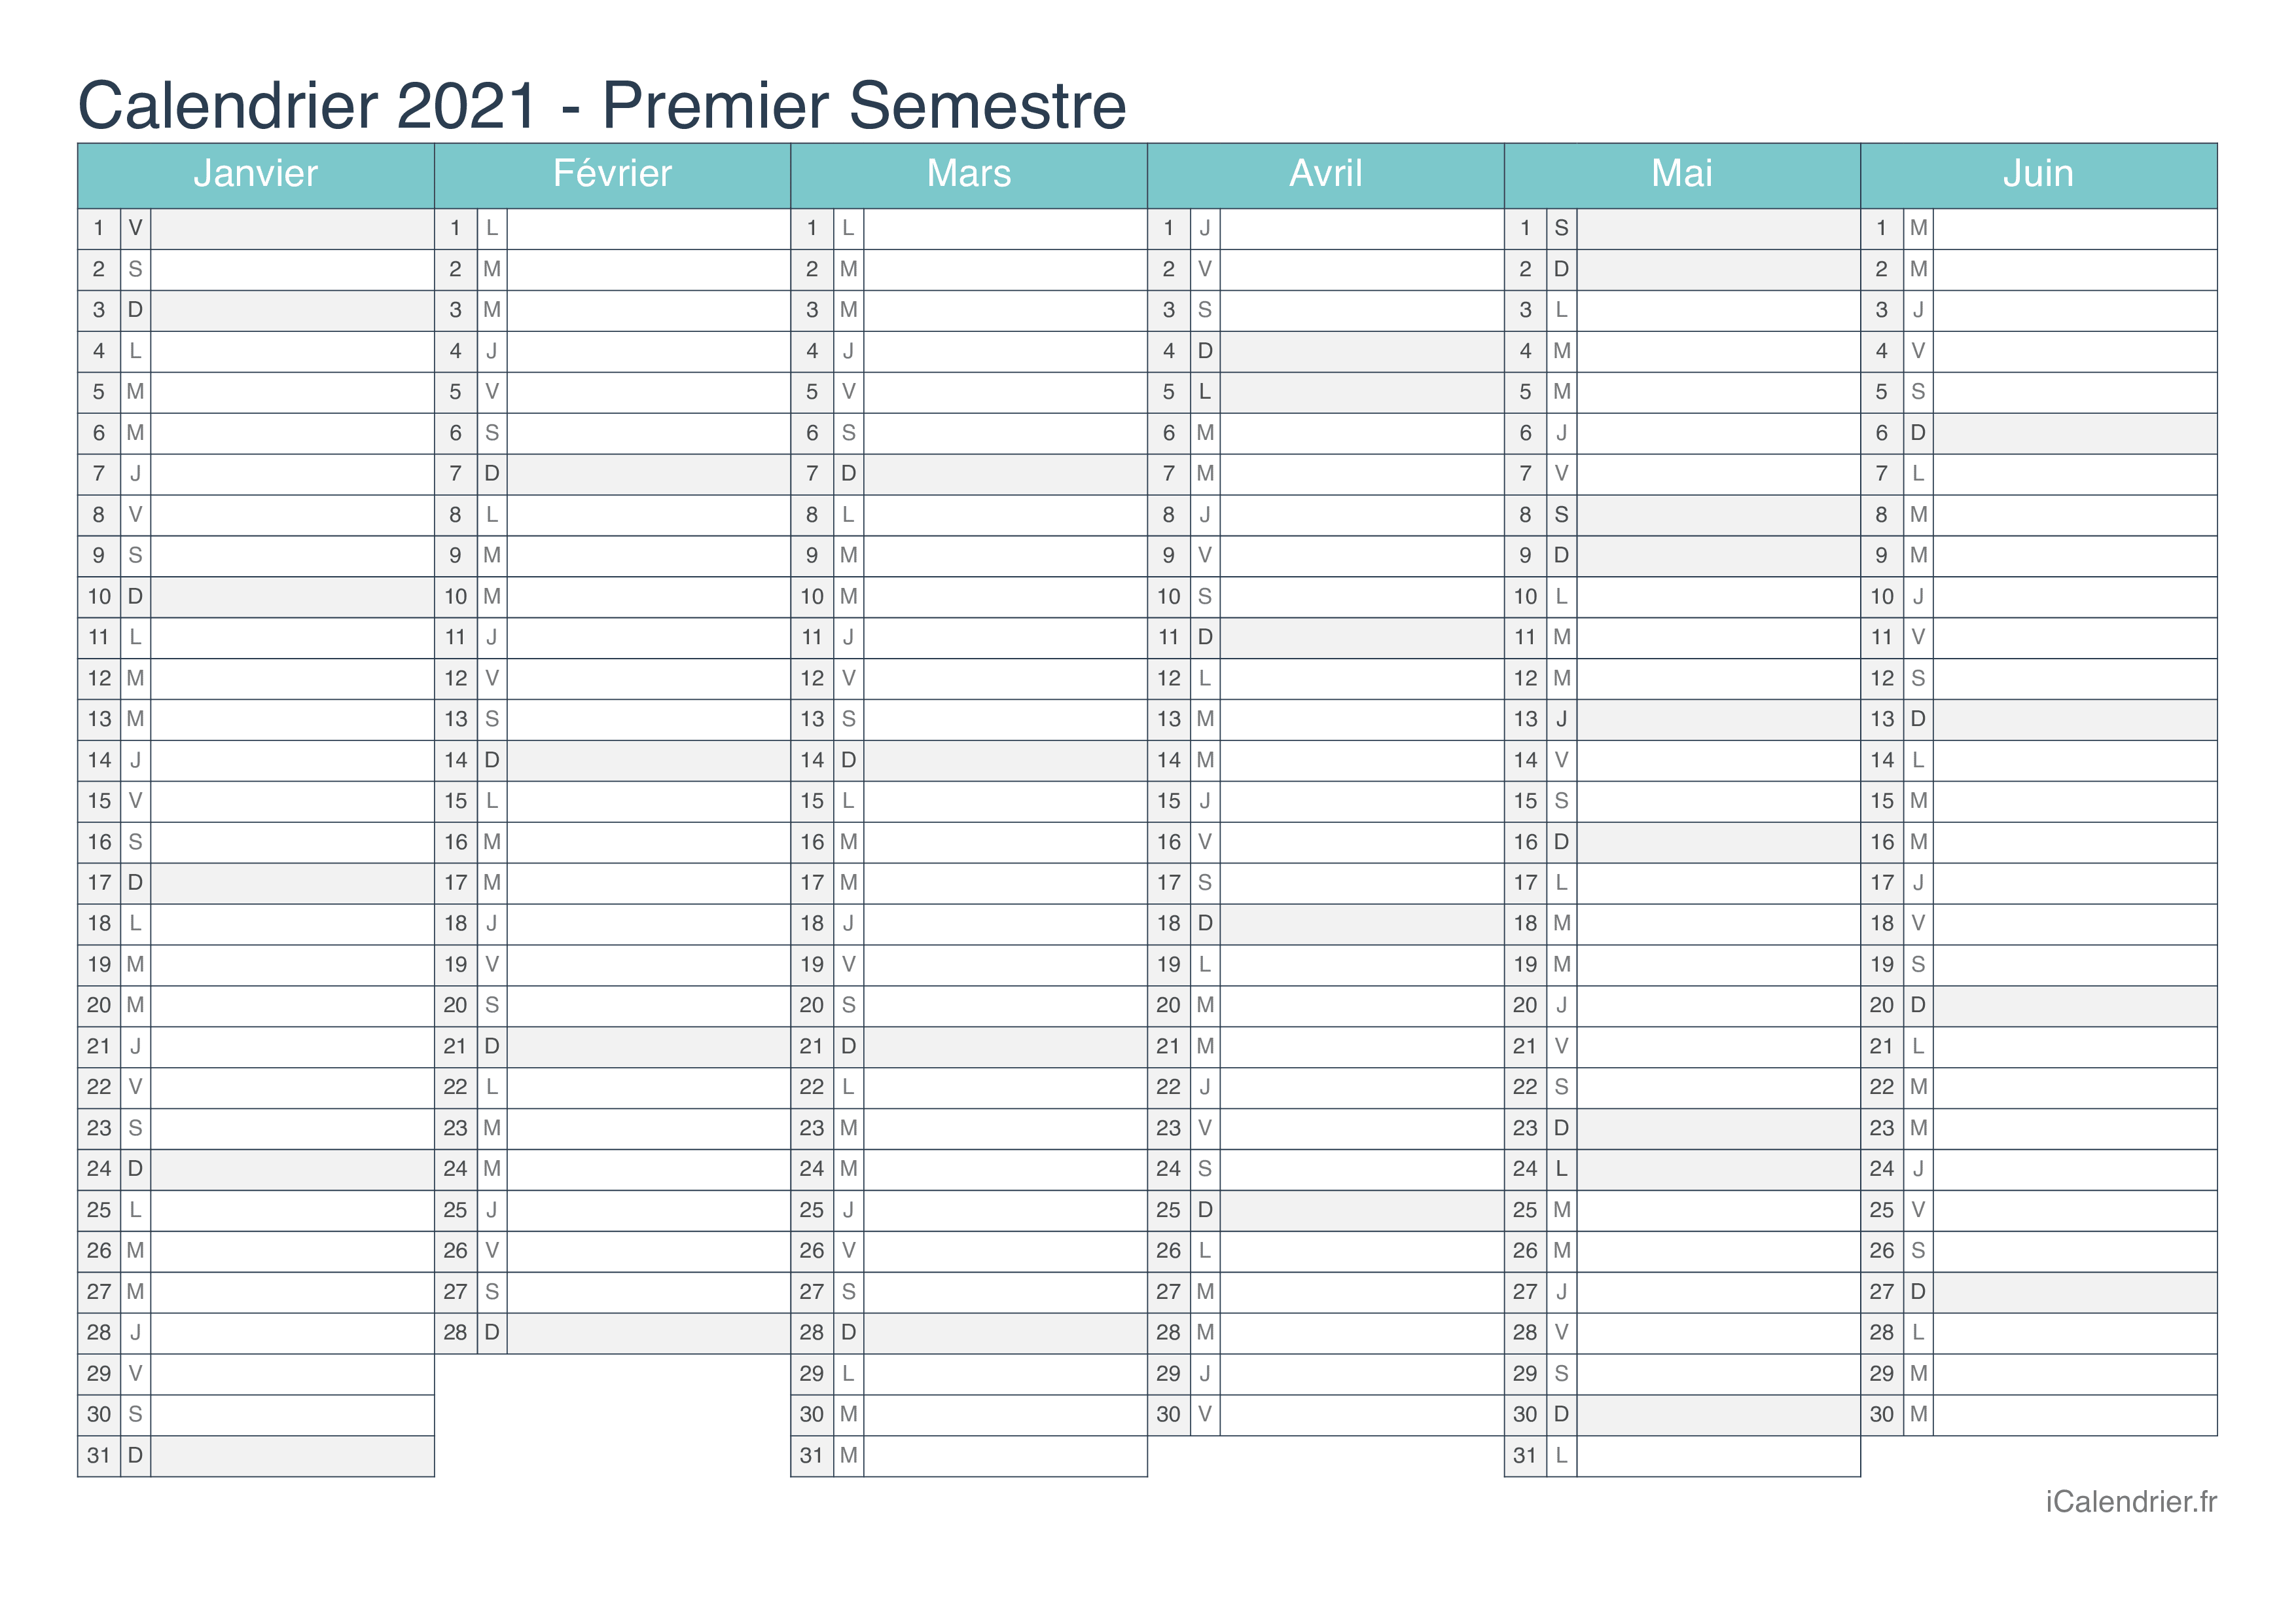 Calendrier par semestre 2021 - Turquoise